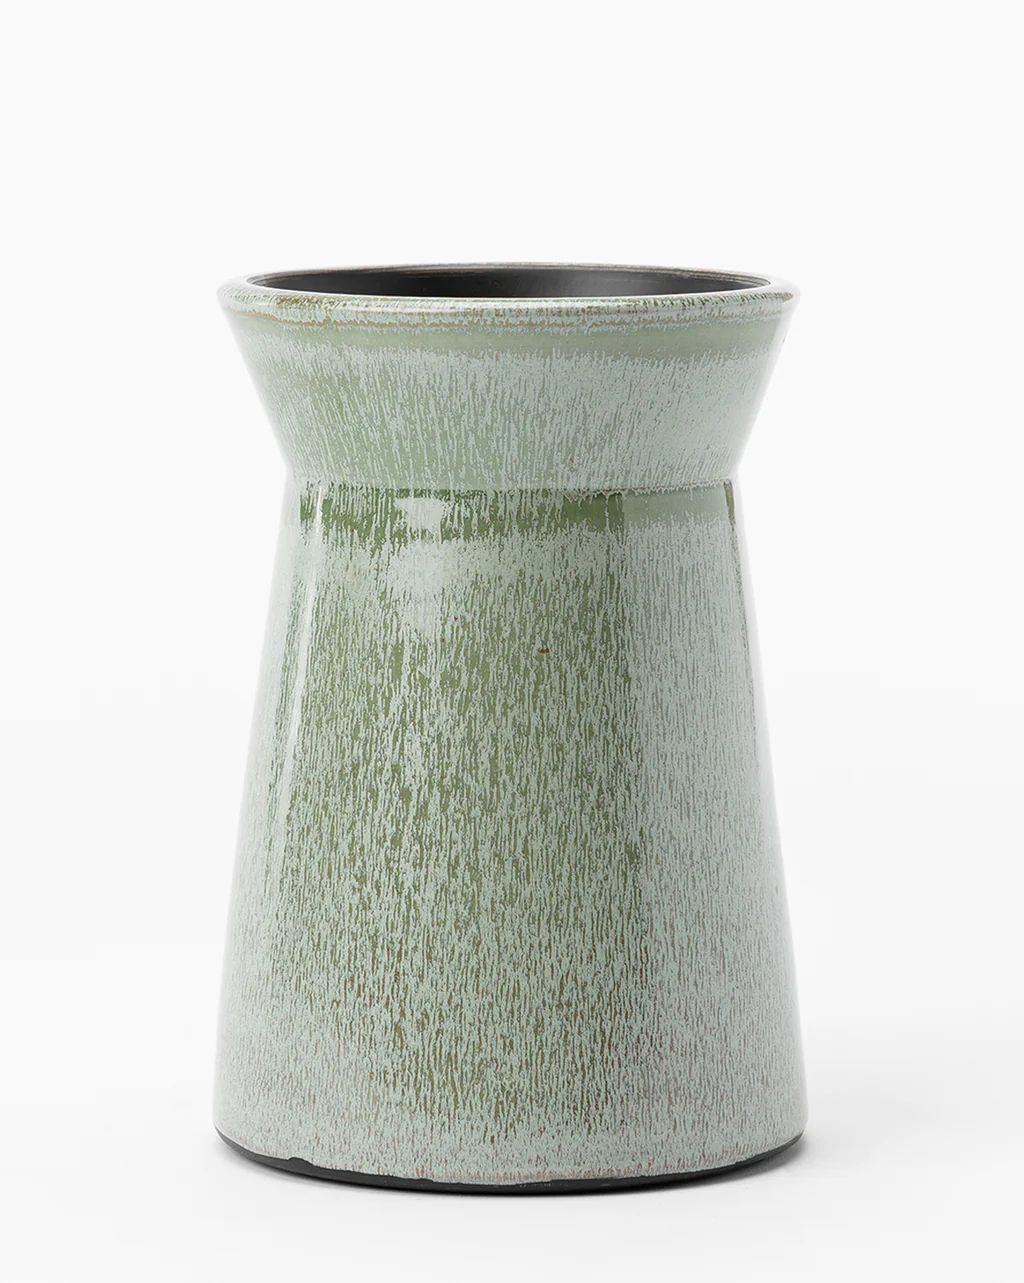 Hesperia Vase | McGee & Co.